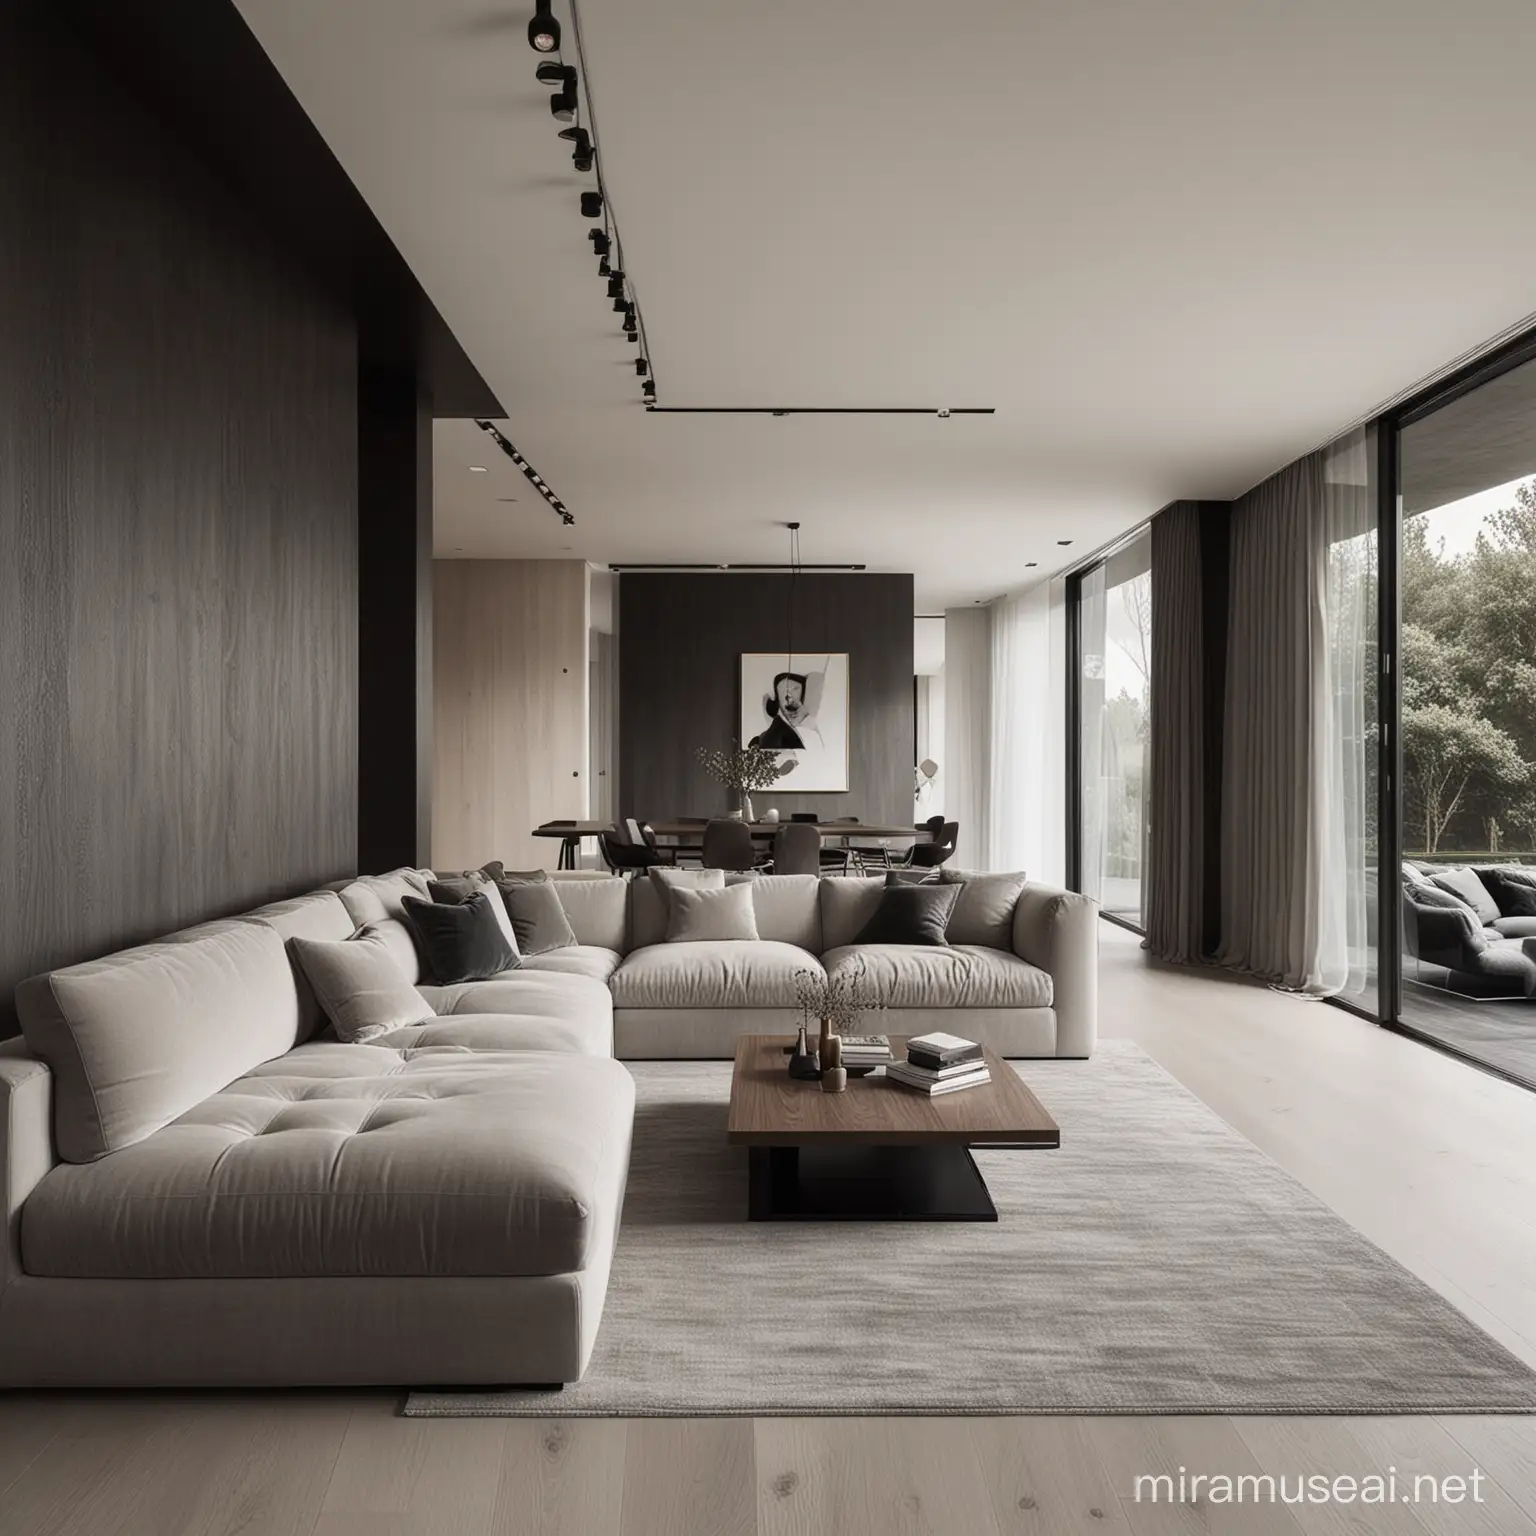 Contrasting Attractive Interior Designs Elegant vs Industrial